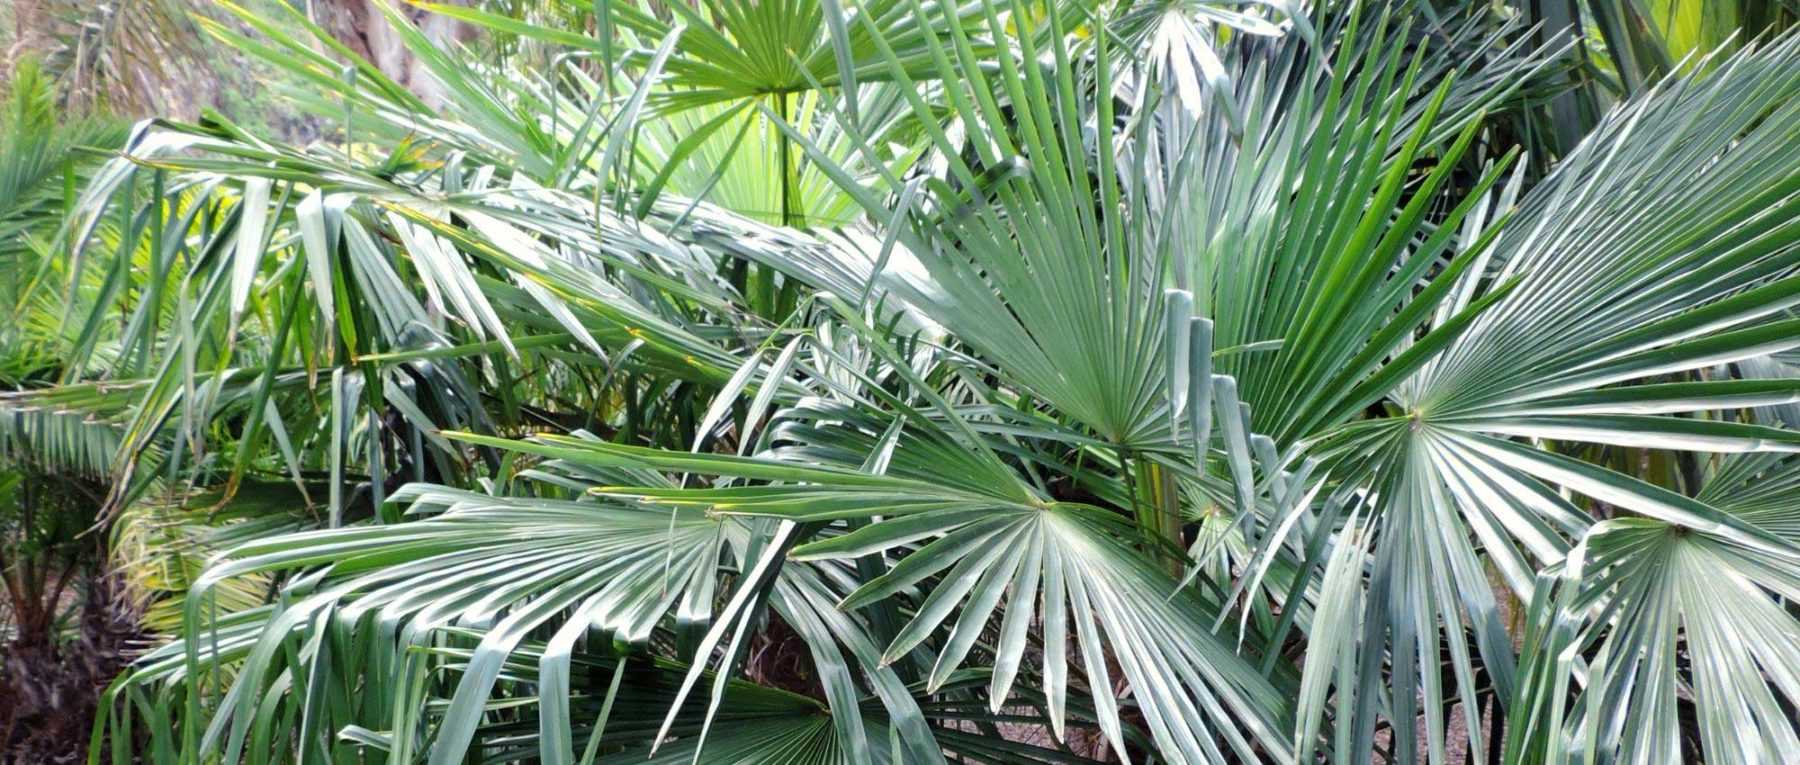 Trachycarpus, Palmier chanvre : planter, cultiver et entretenir